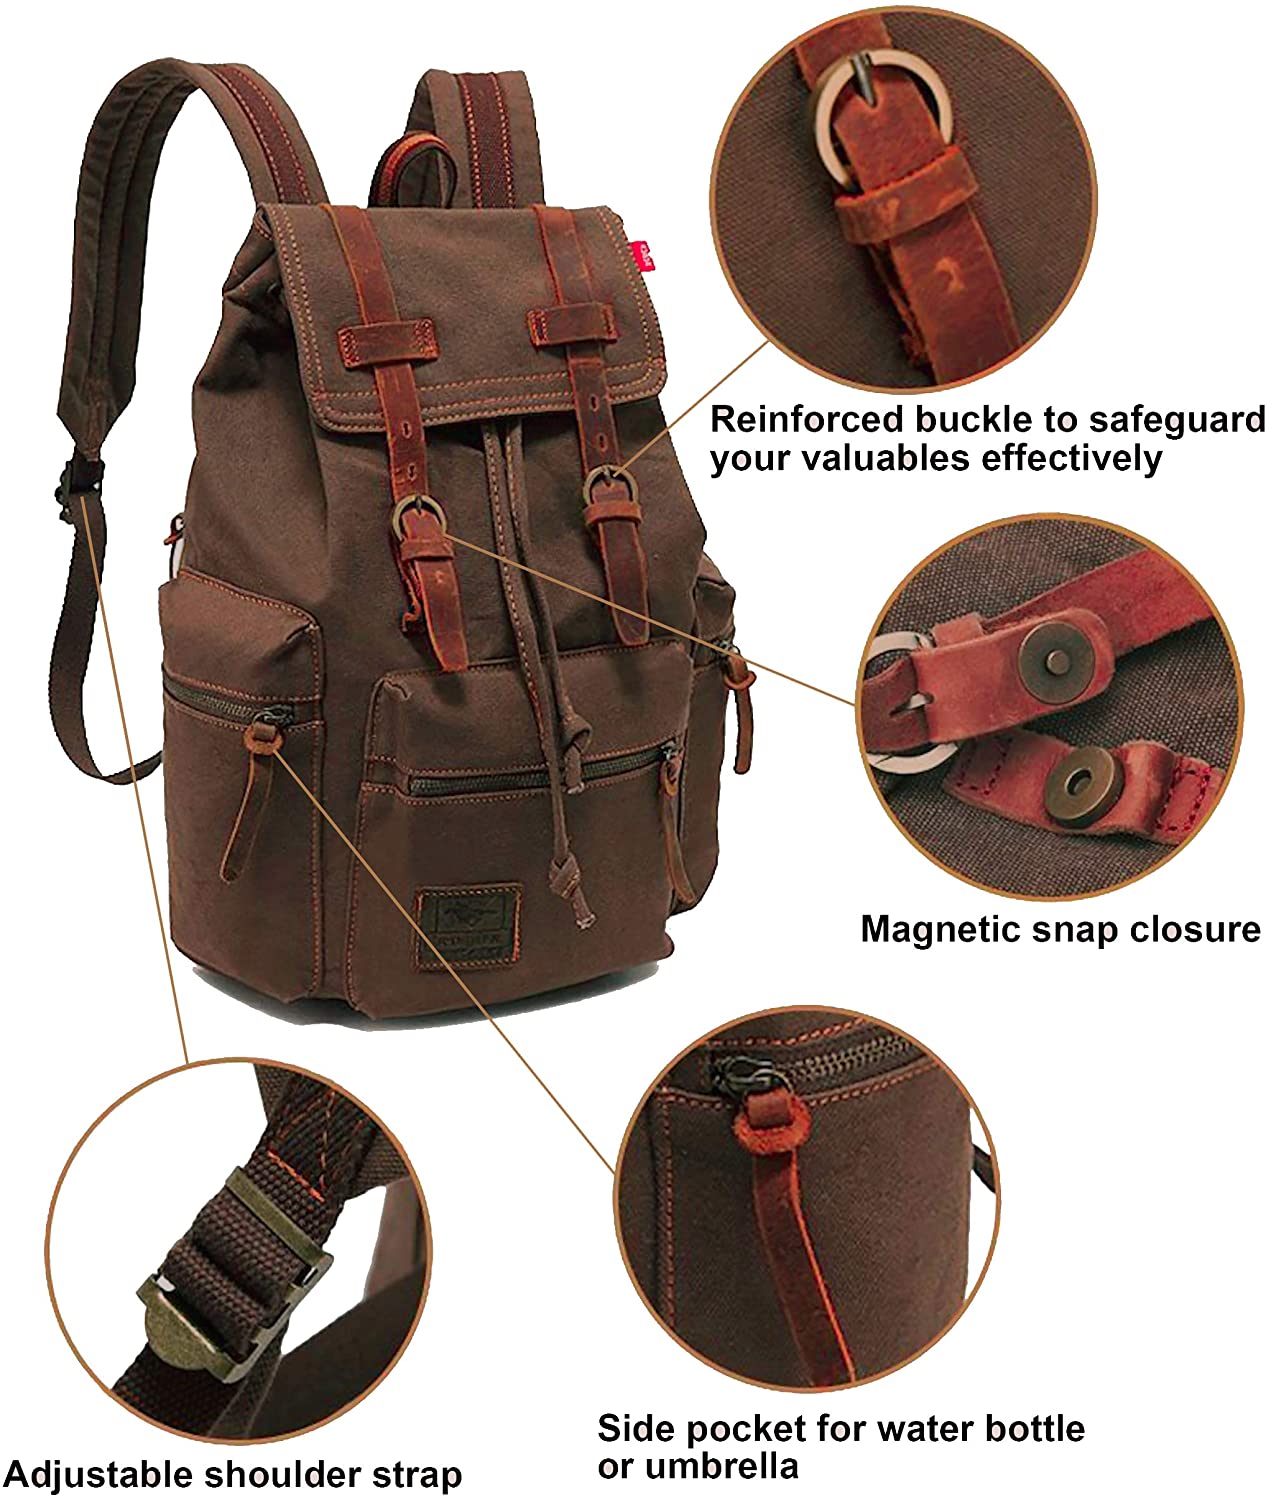 High Capacity Vintage Travel Canvas Leather Backpack School Bag for Men,Computers Laptop Backpacks Rucksack,Shoulder Camping Hiking Backpacks Bookbag 14" Laptop for Men Women - image 4 of 9